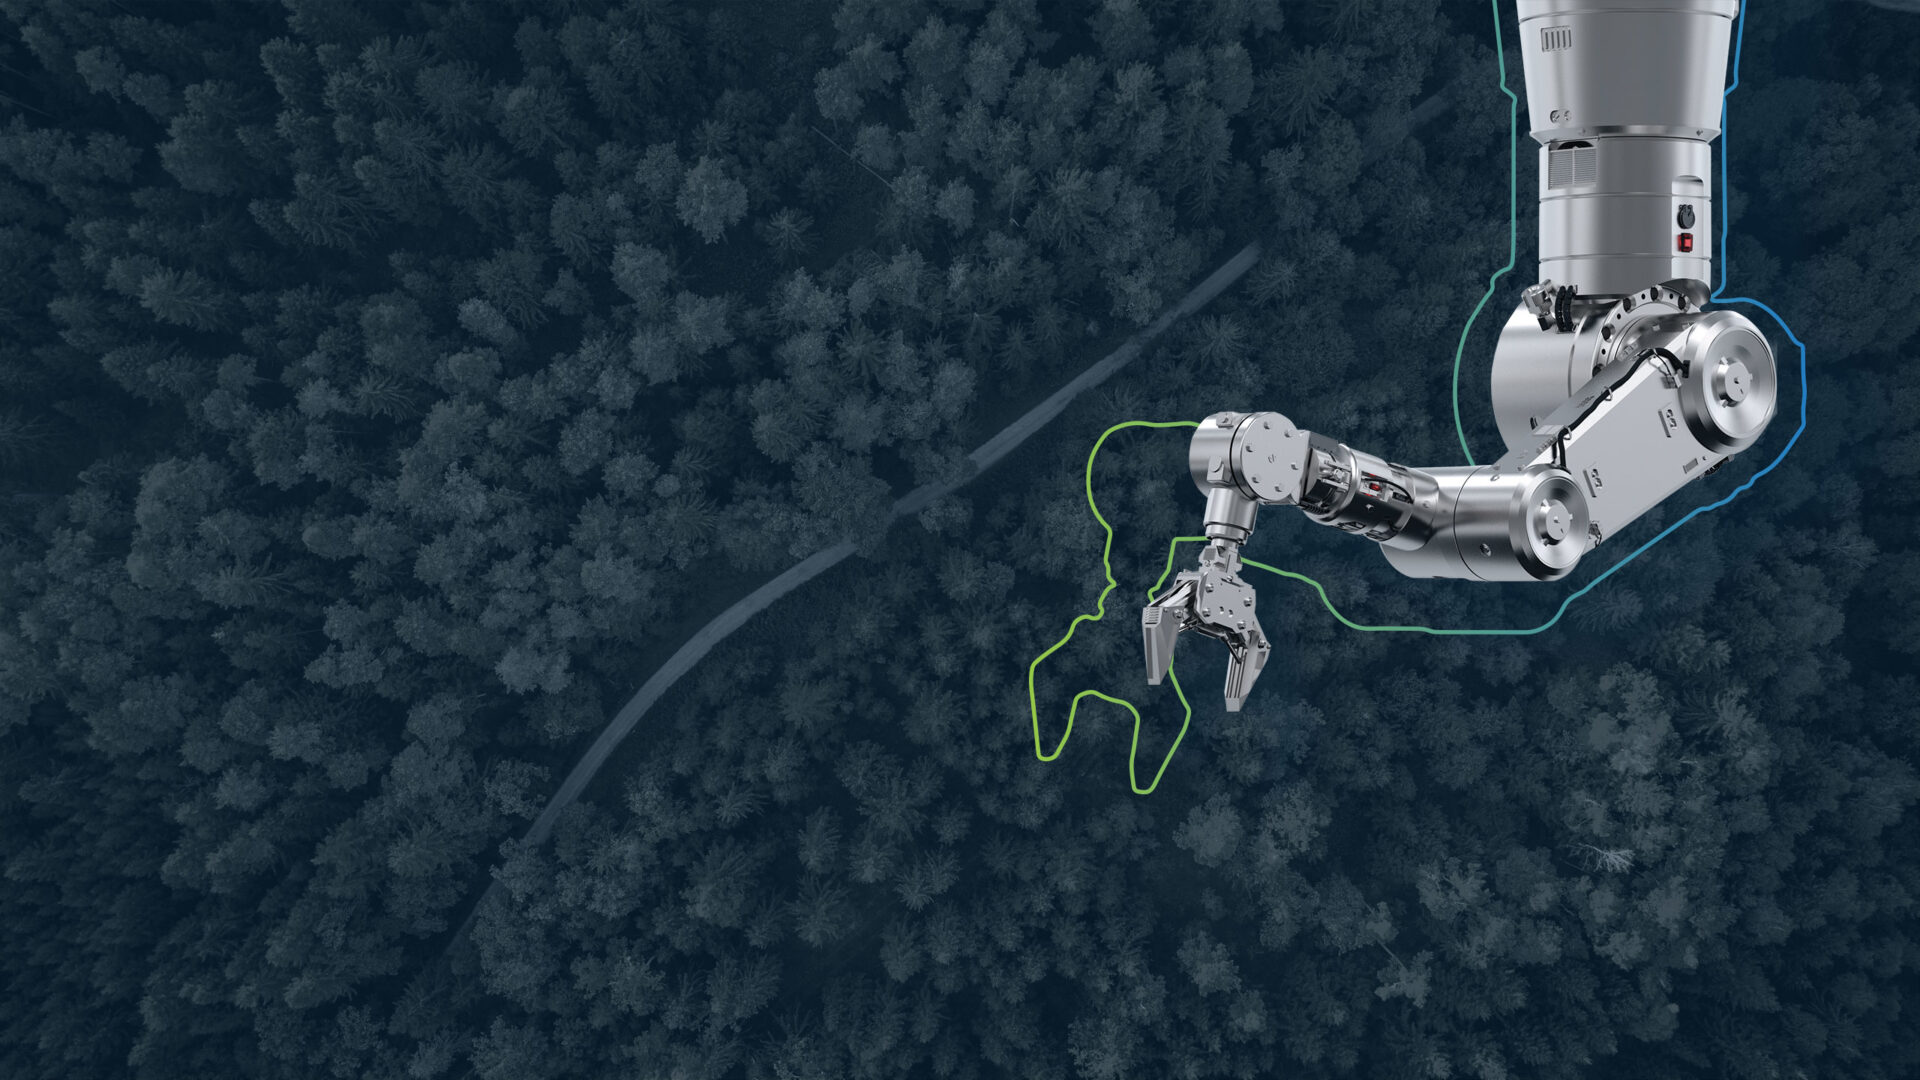 Headerbild zur Seite "Green Factory": zeigt Roboterarm einer Produktion im Vordergrund und Waldlandschaft von oben im Hintergrund